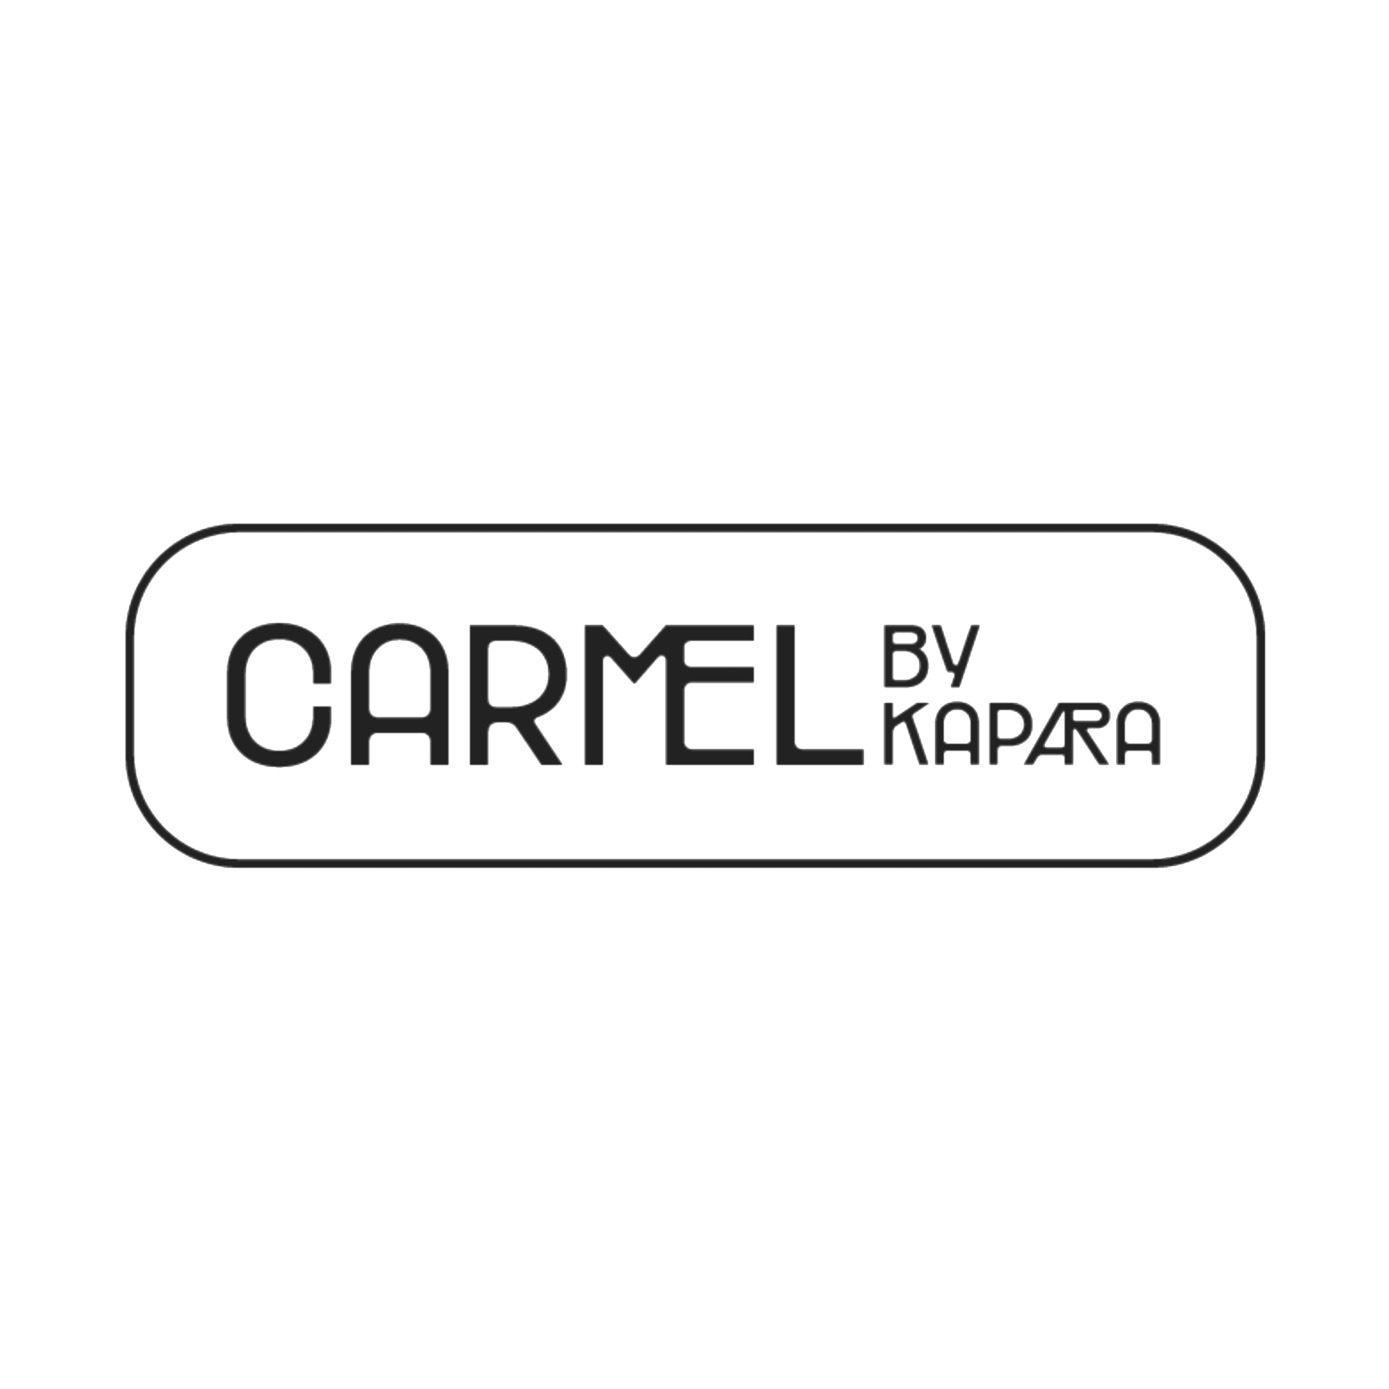 Carmel By Kapara